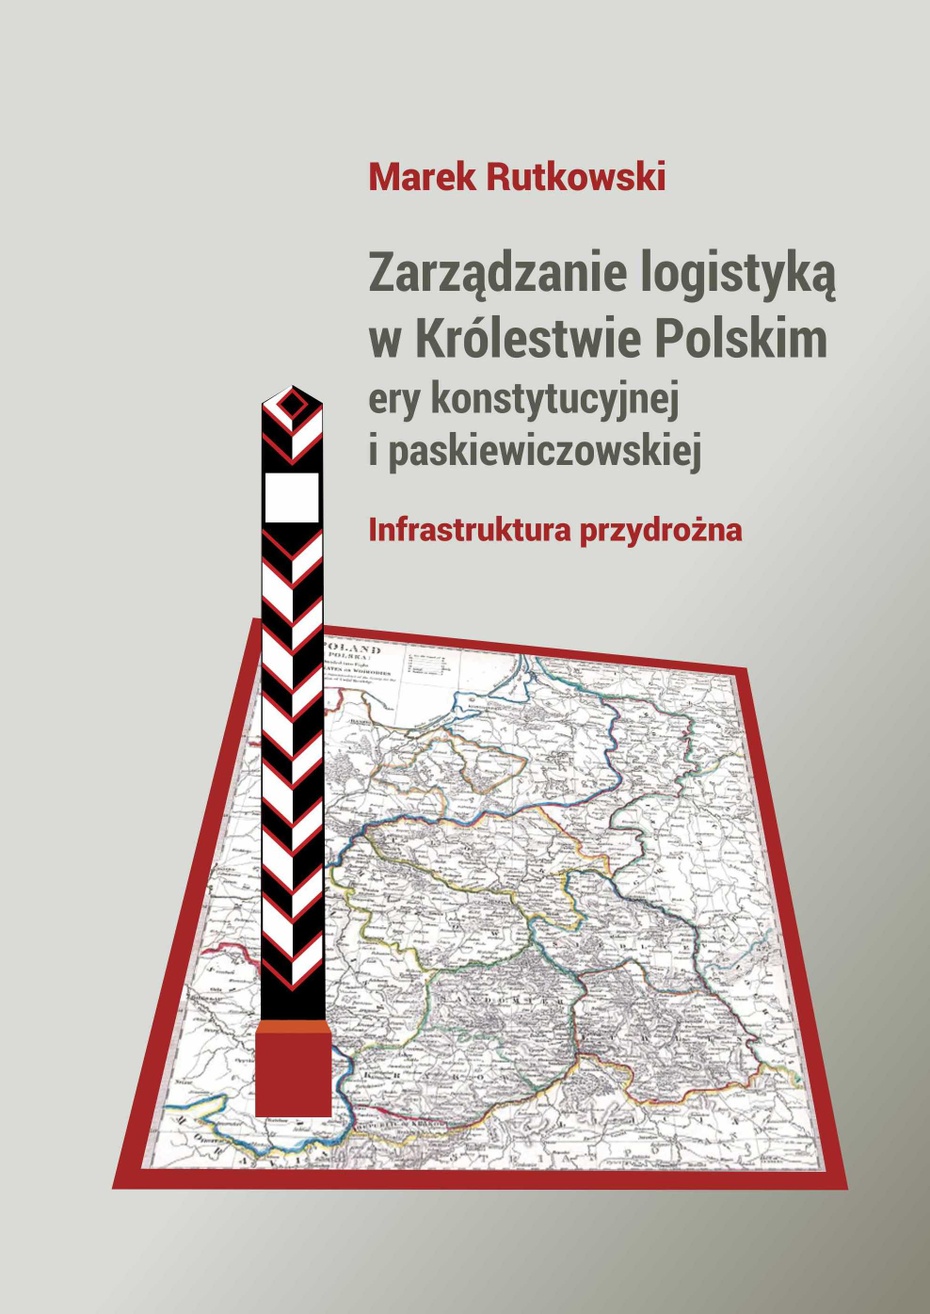 "Zarządzanie logistyką w Królestwie Polskim epoki konstytucyjnej i paskiewiczowskiej - infrastruktura przydrożna"